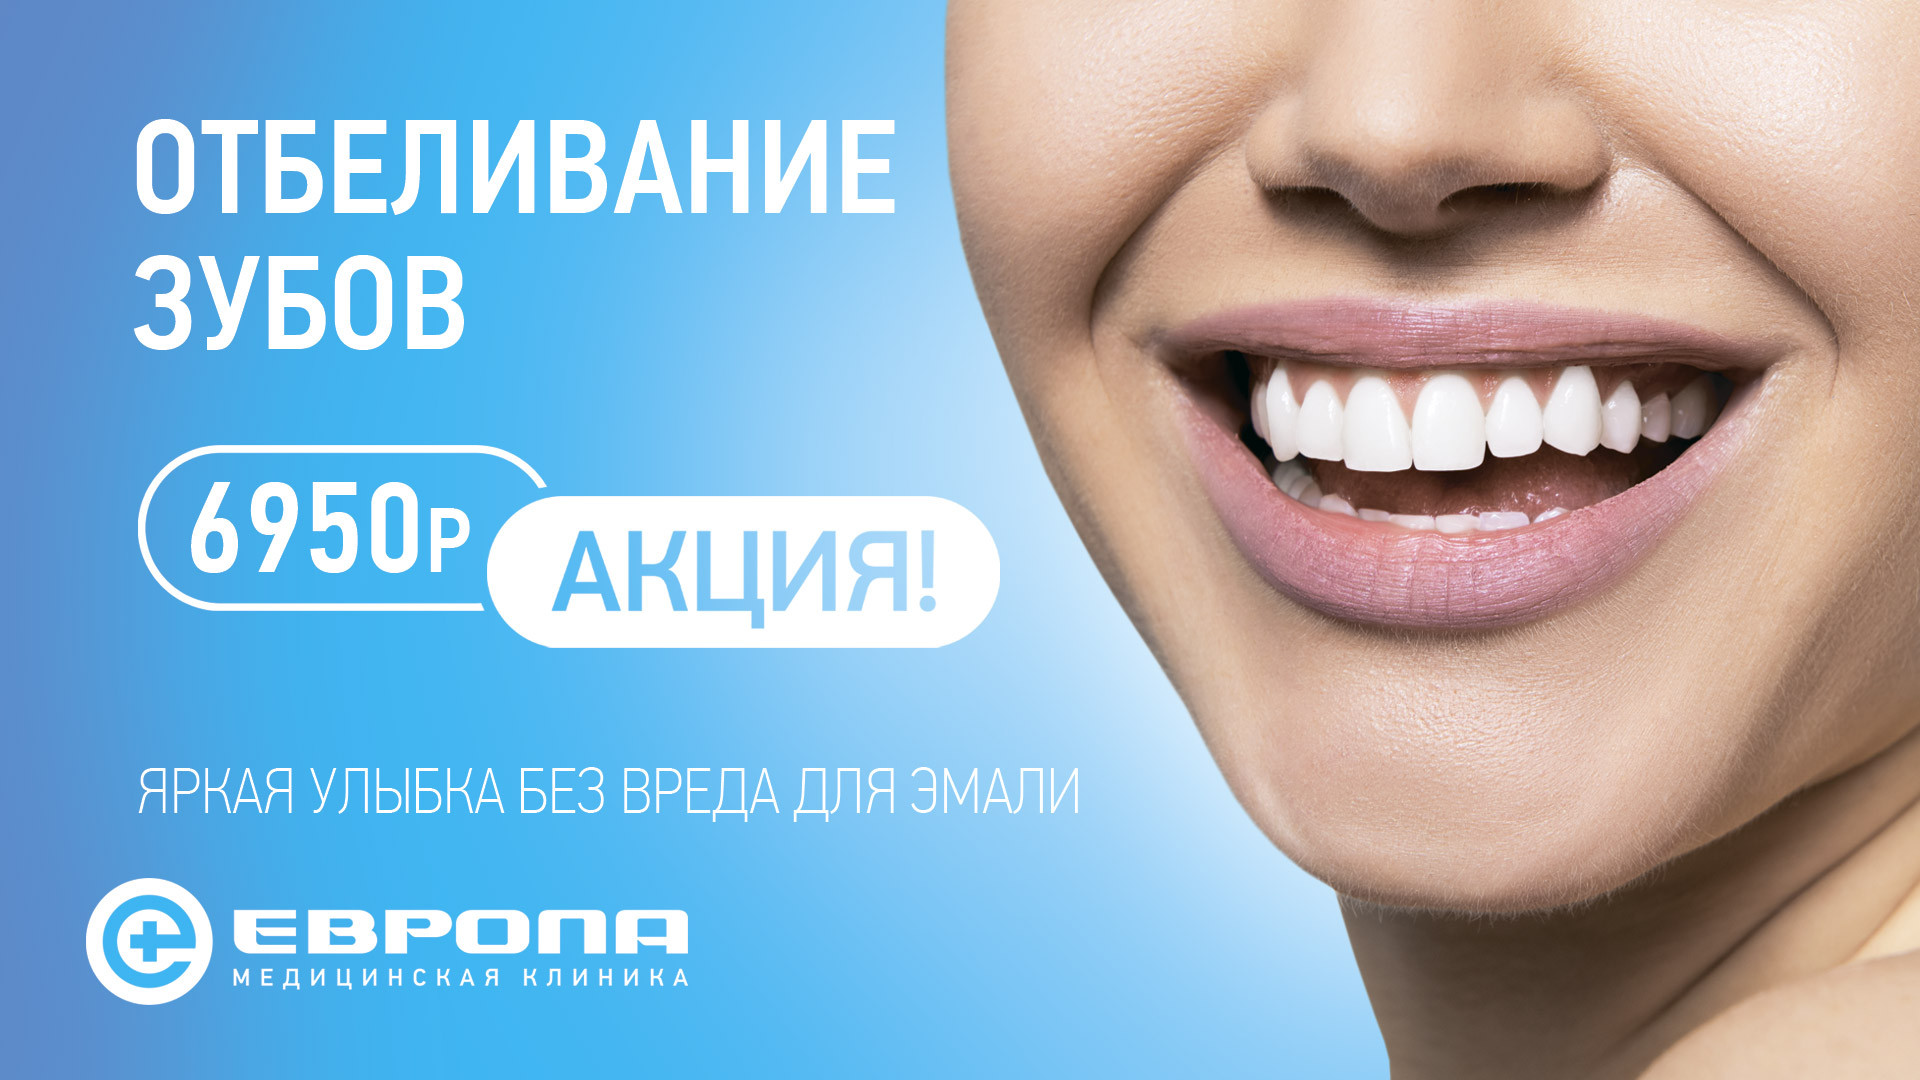 Зуба без рекламы. Реклама стоматологии. Девушка с красивыми зубами. Стоматология баннер. Отбеливание зубов акция.